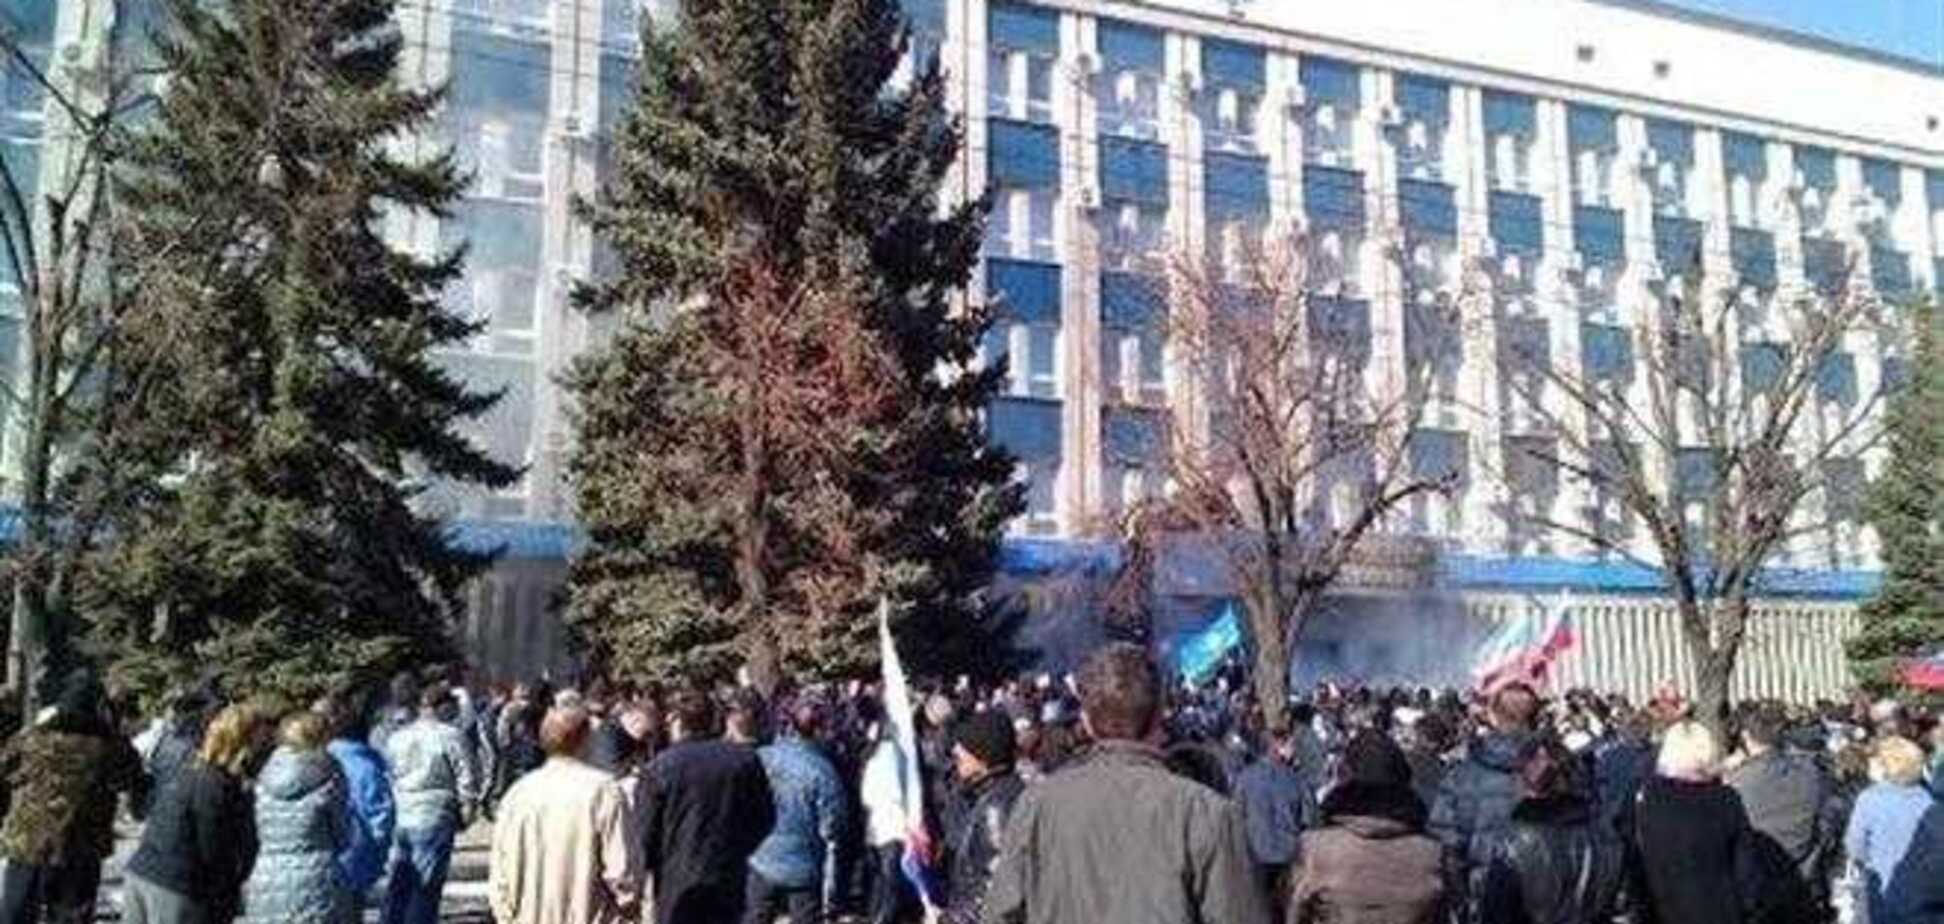 Захоплення будівлі СБУ у Луганську: силовика винесли на носилках, жінці розбили голову